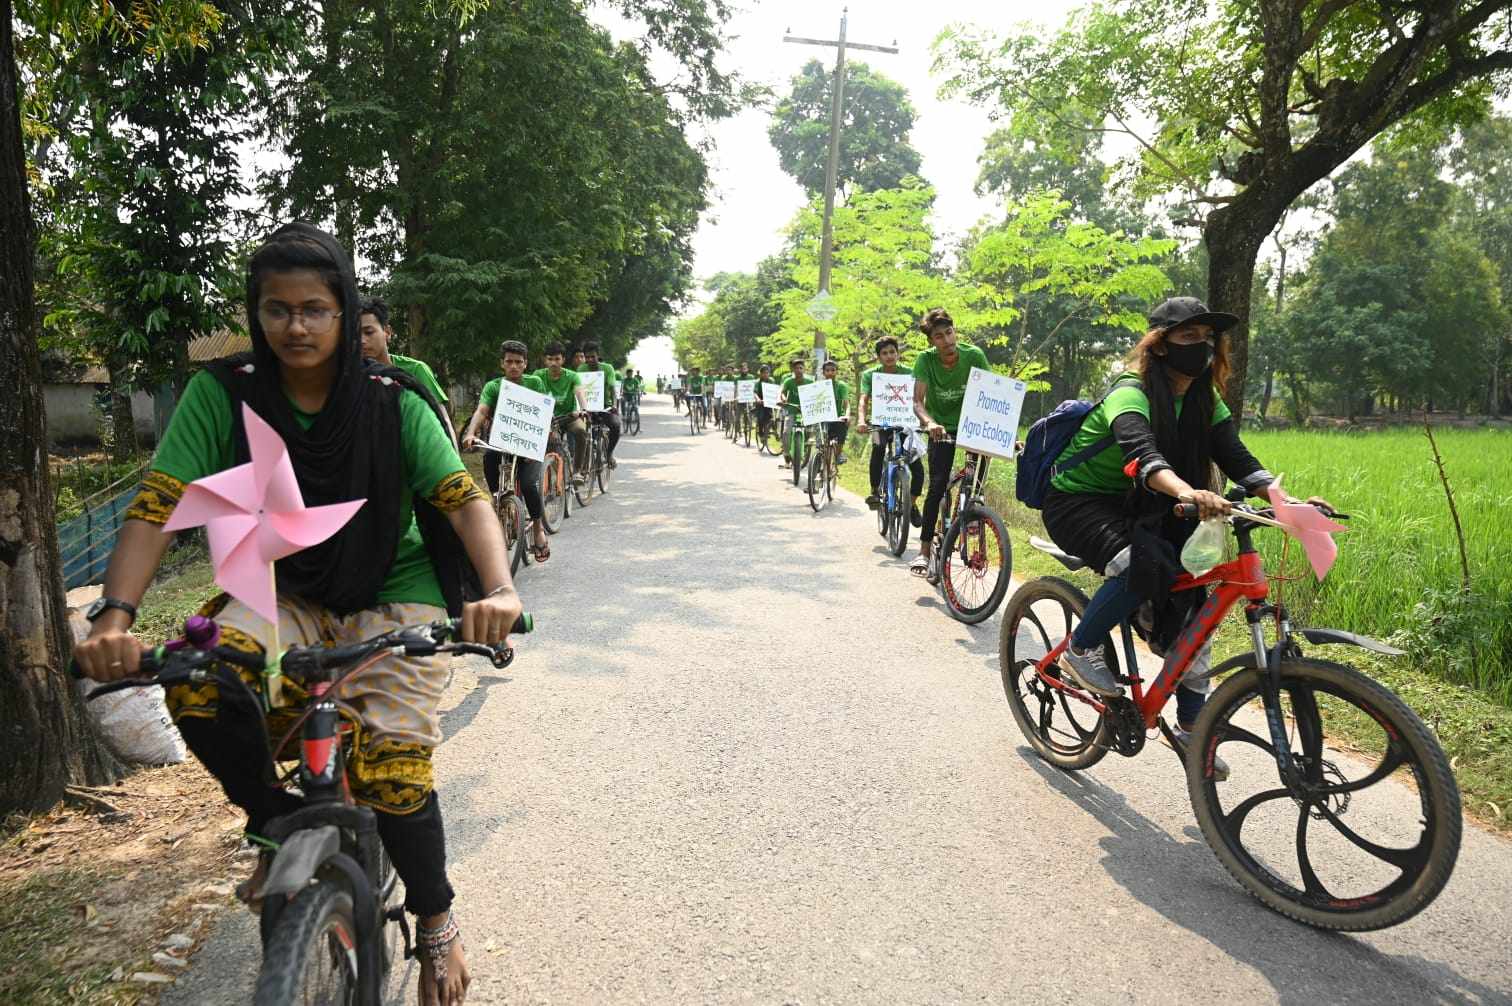 Satkhira, Bangladesh, 3 November: diinisiasi oleh gerakan perempuan, para aktivis dari berbagai usia menyerukan penghentian penggunaan energi kotor. Untuk menuntut lebih banyak investasi pada energi terbarukan, mereka mengorganisir banyak aksi sepanjang hari, termasuk protes bersepeda. Kredit foto: BINDU Nari Unnayan Sangathan